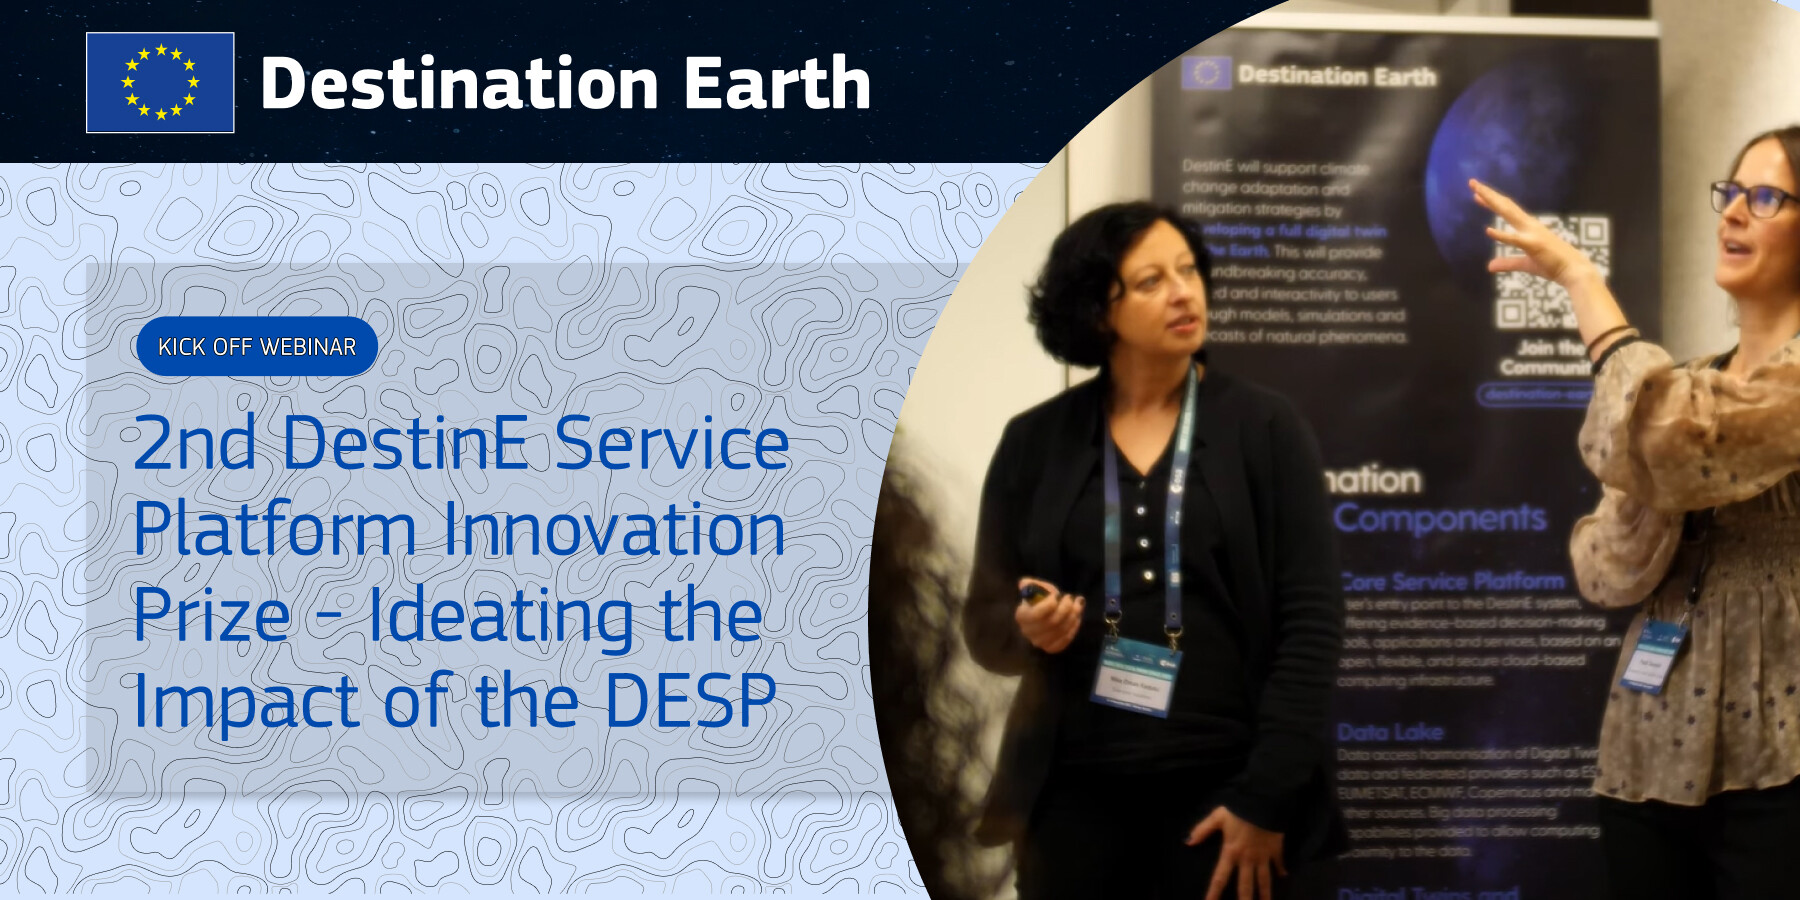 2nd DestinE Service Platform Innovation Prize